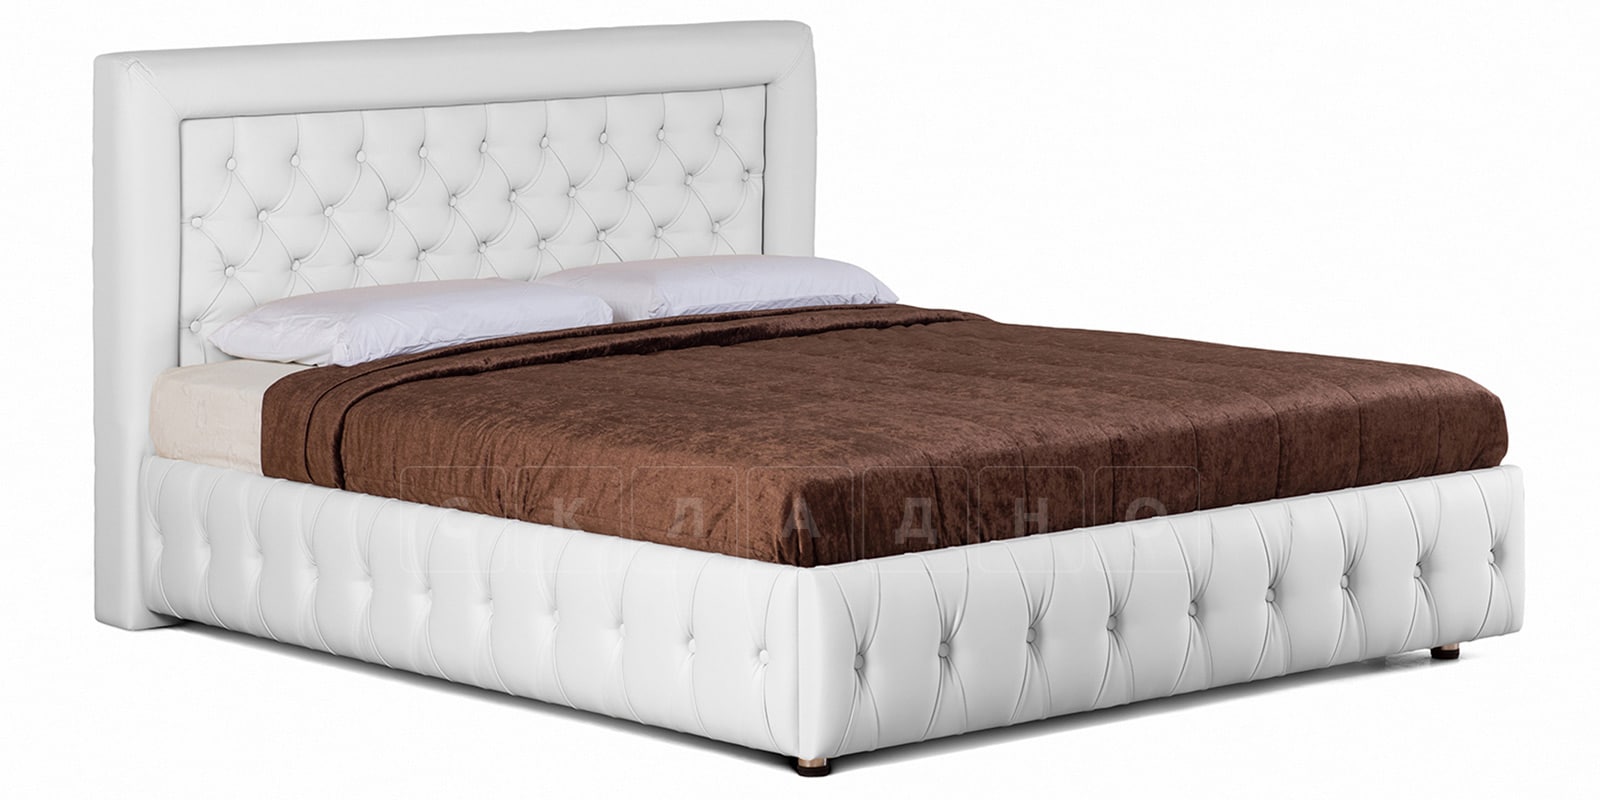 Мягкая кровать Малибу 160см экокожа белого цвета вариант 7 фото 1 | интернет-магазин Складно